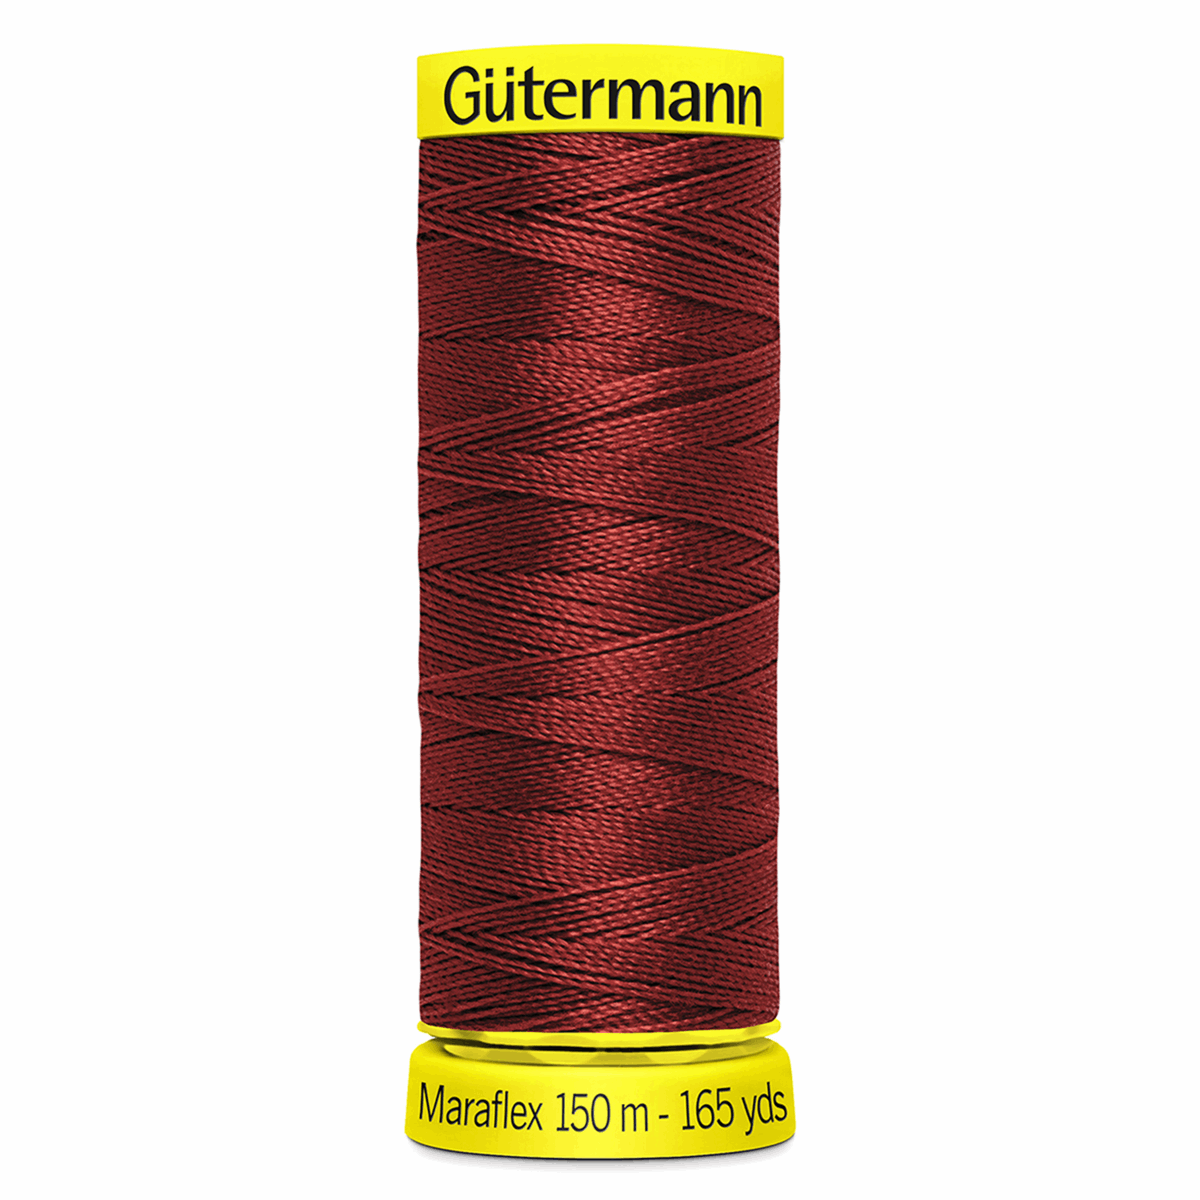 Gutermann Maraflex Elastic Sewing Thread 150m Dark Red 12